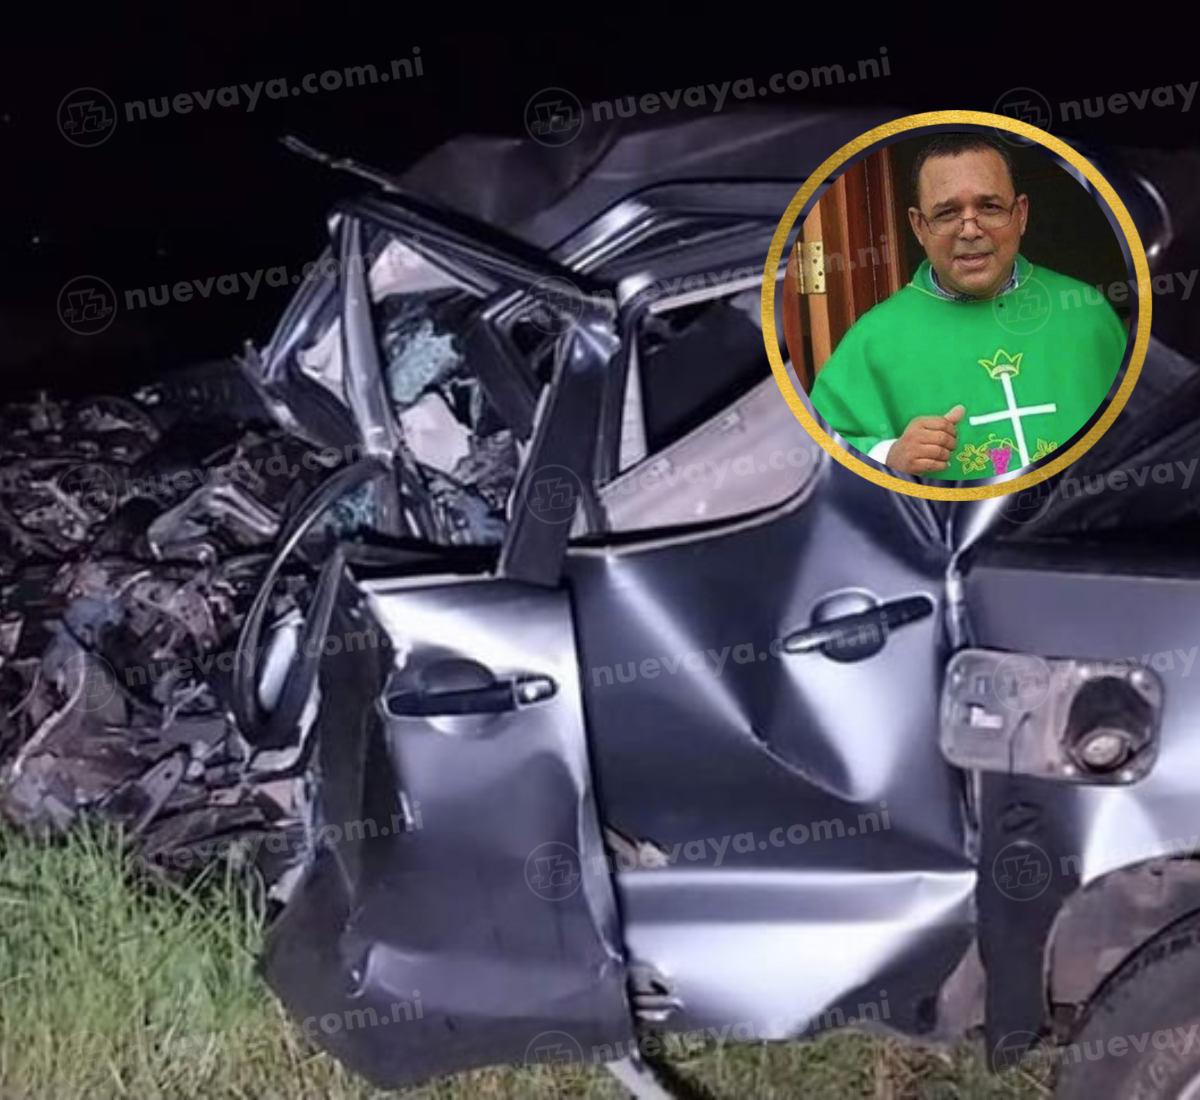 El sacerdote nicaragüense Fernando Espinoza Pérez falleció en un accidente de tránsito